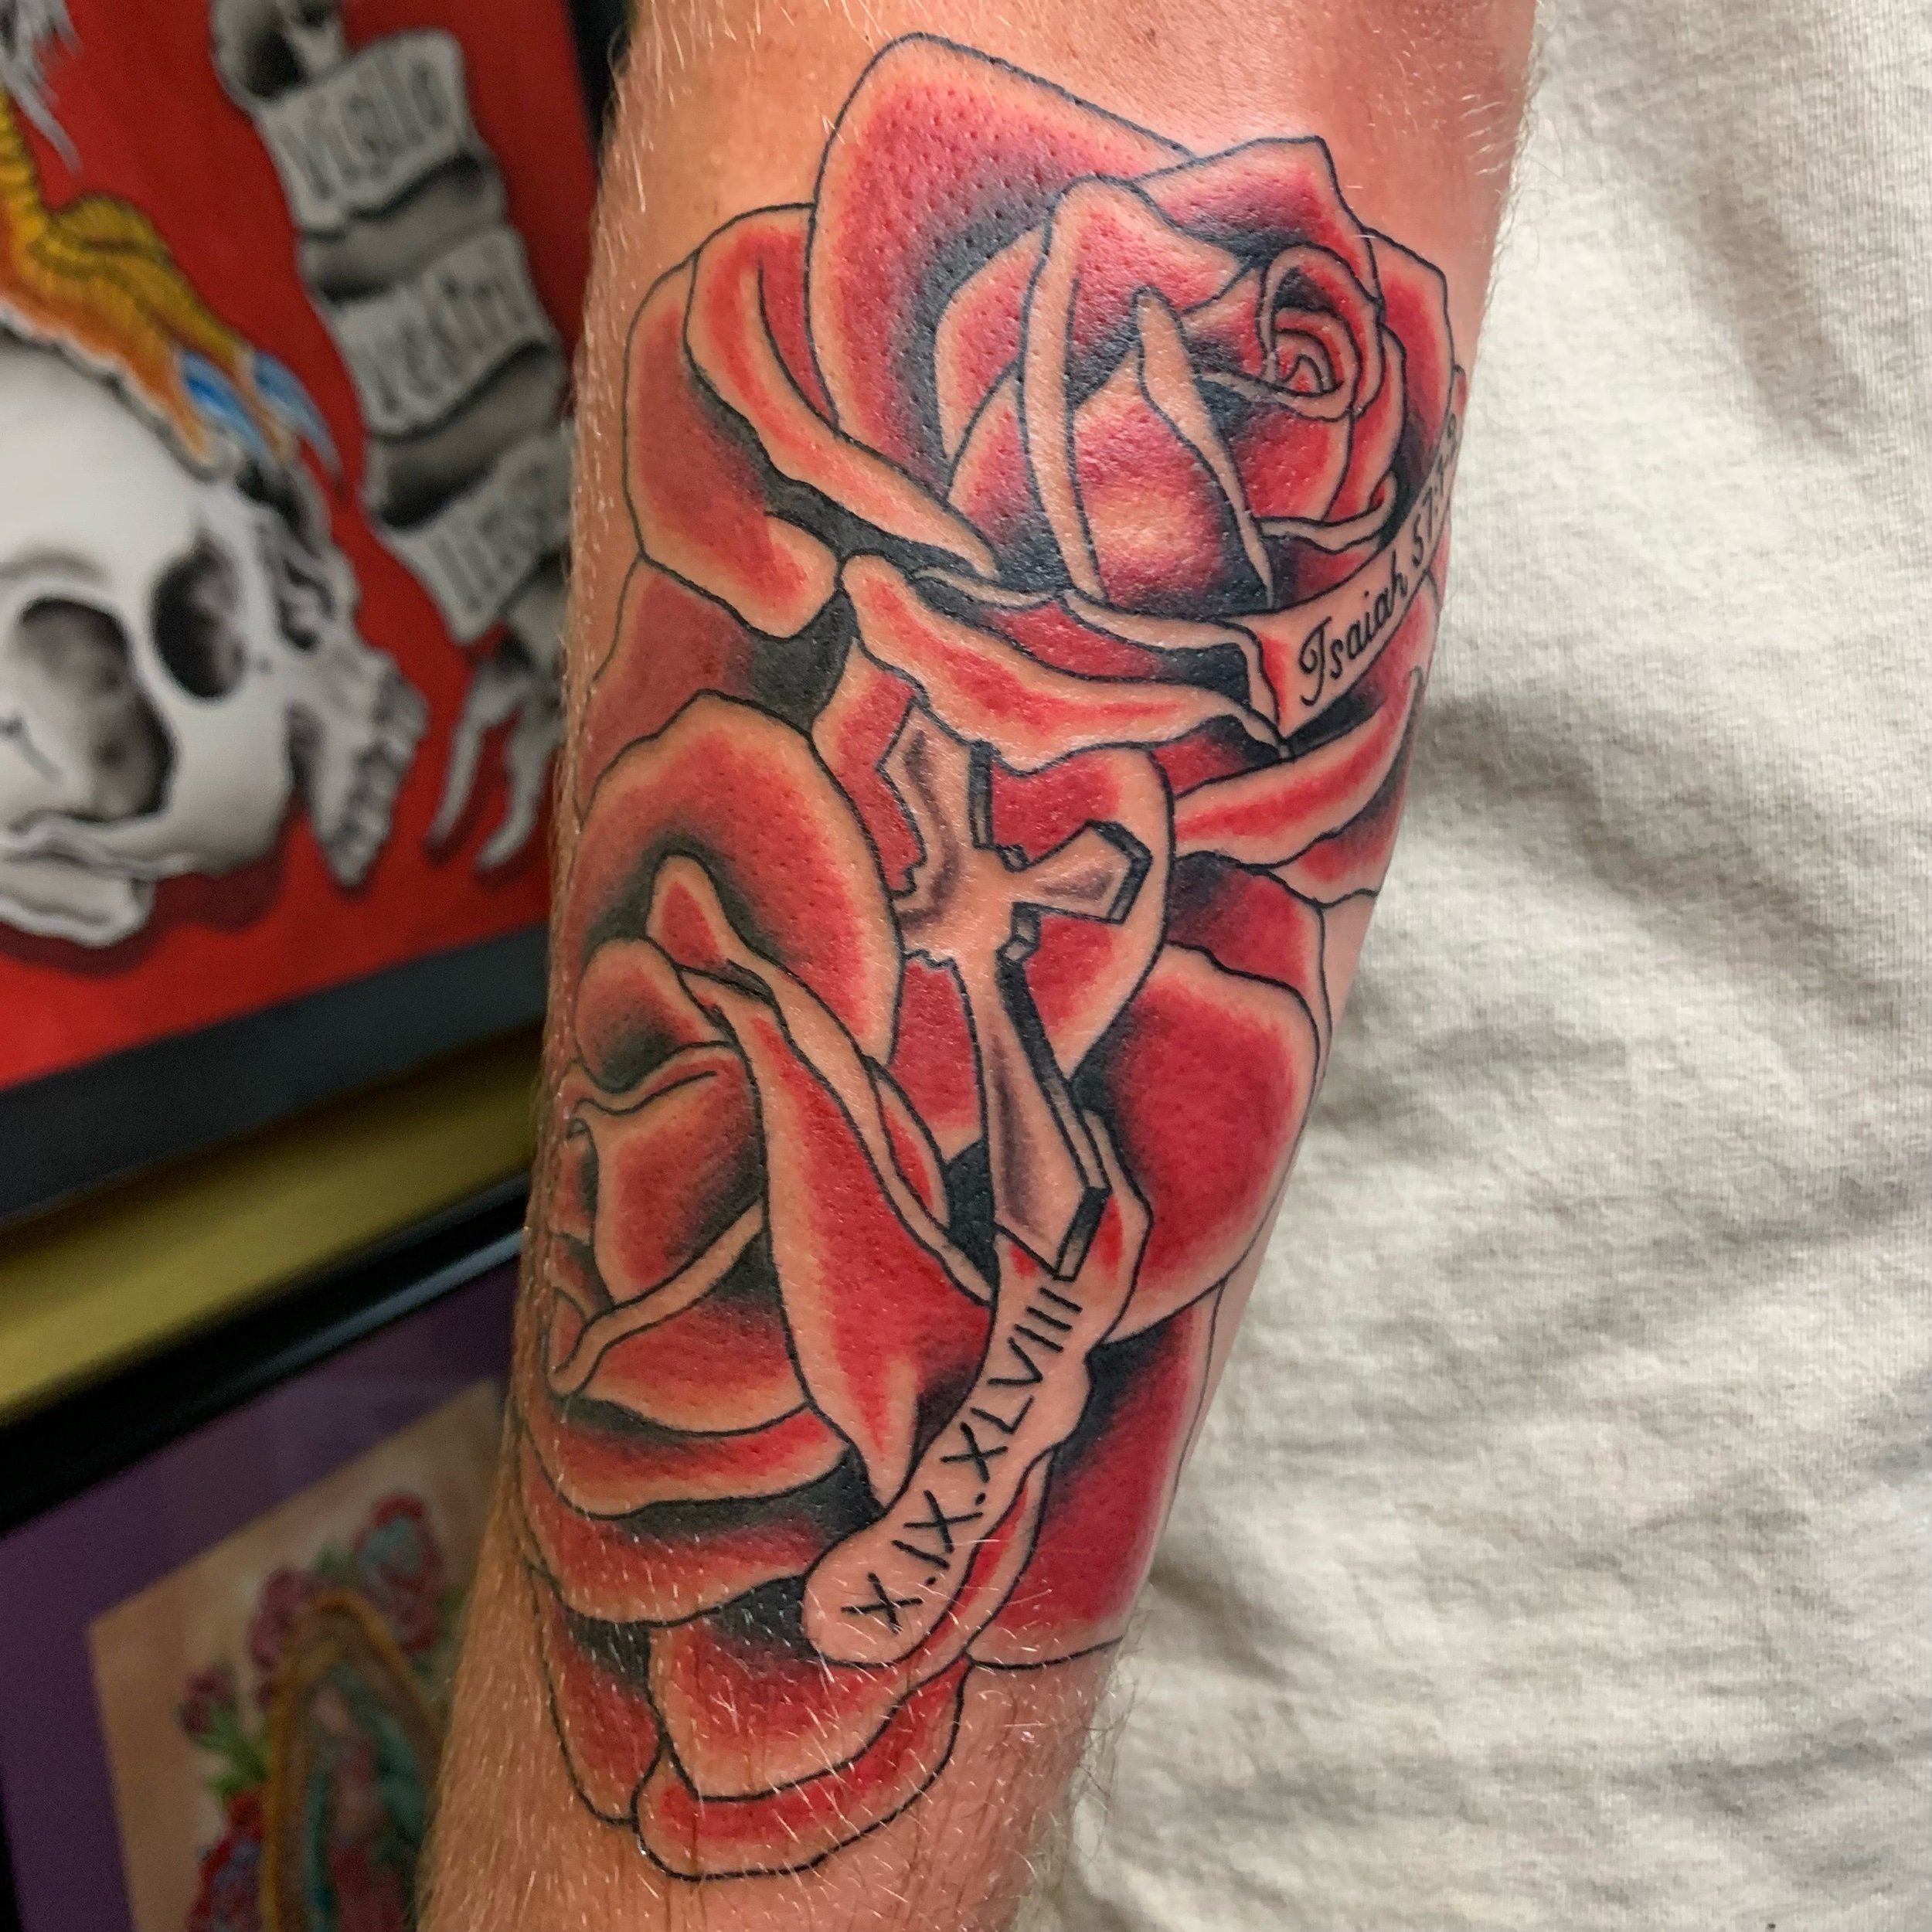 Carson Lain — Pinnacle Tattoo